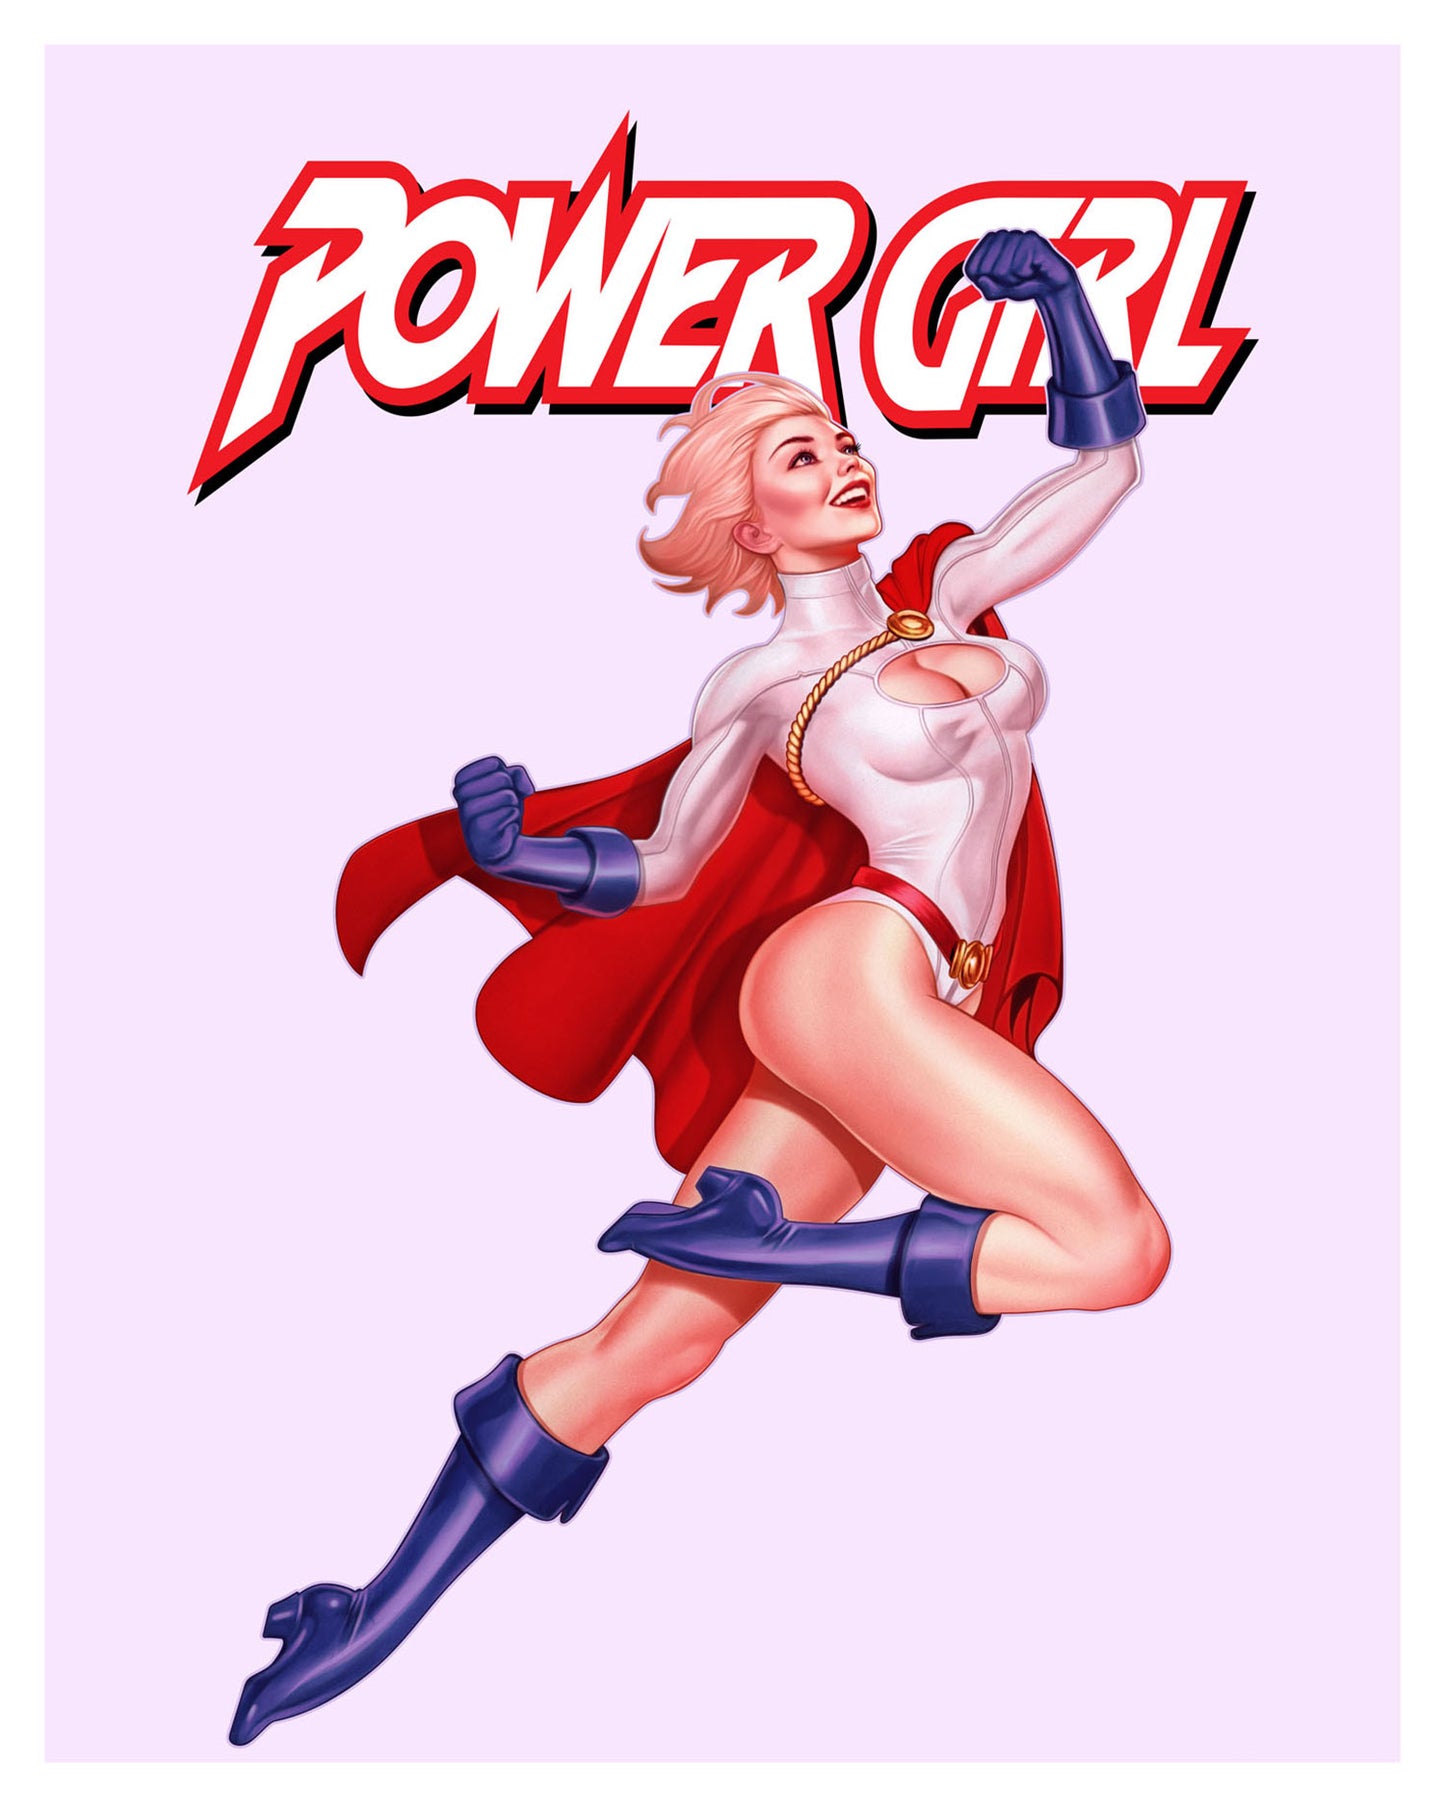 John Keaveney "Power Girl" Titled